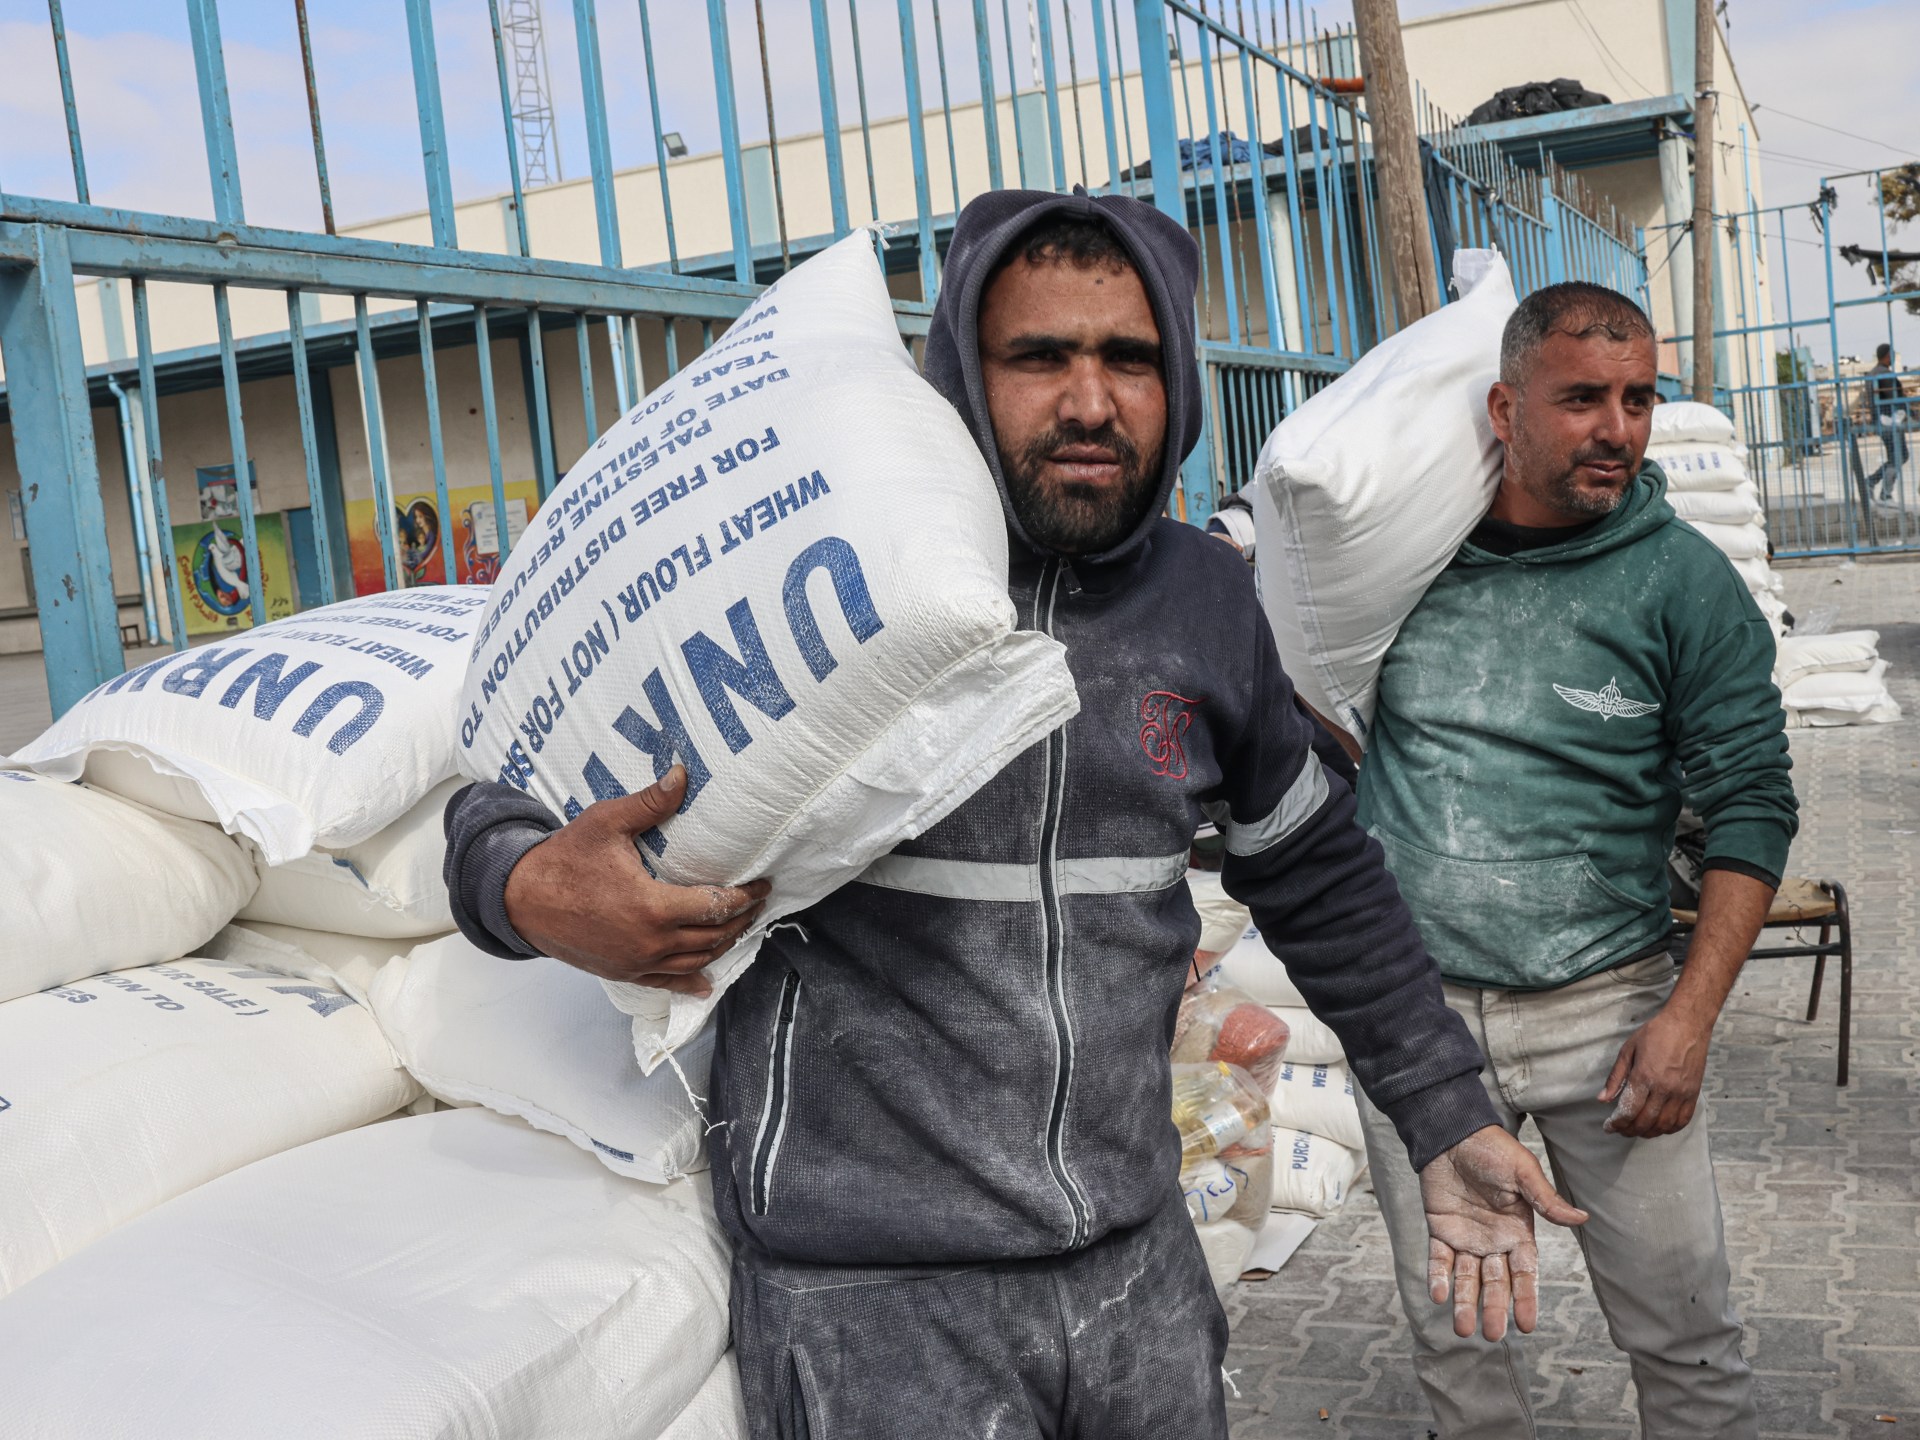 Badan PBB untuk Palestina mengumpulkan hanya 7 juta dari 0 juta yang dibutuhkan |  Berita UNRWA